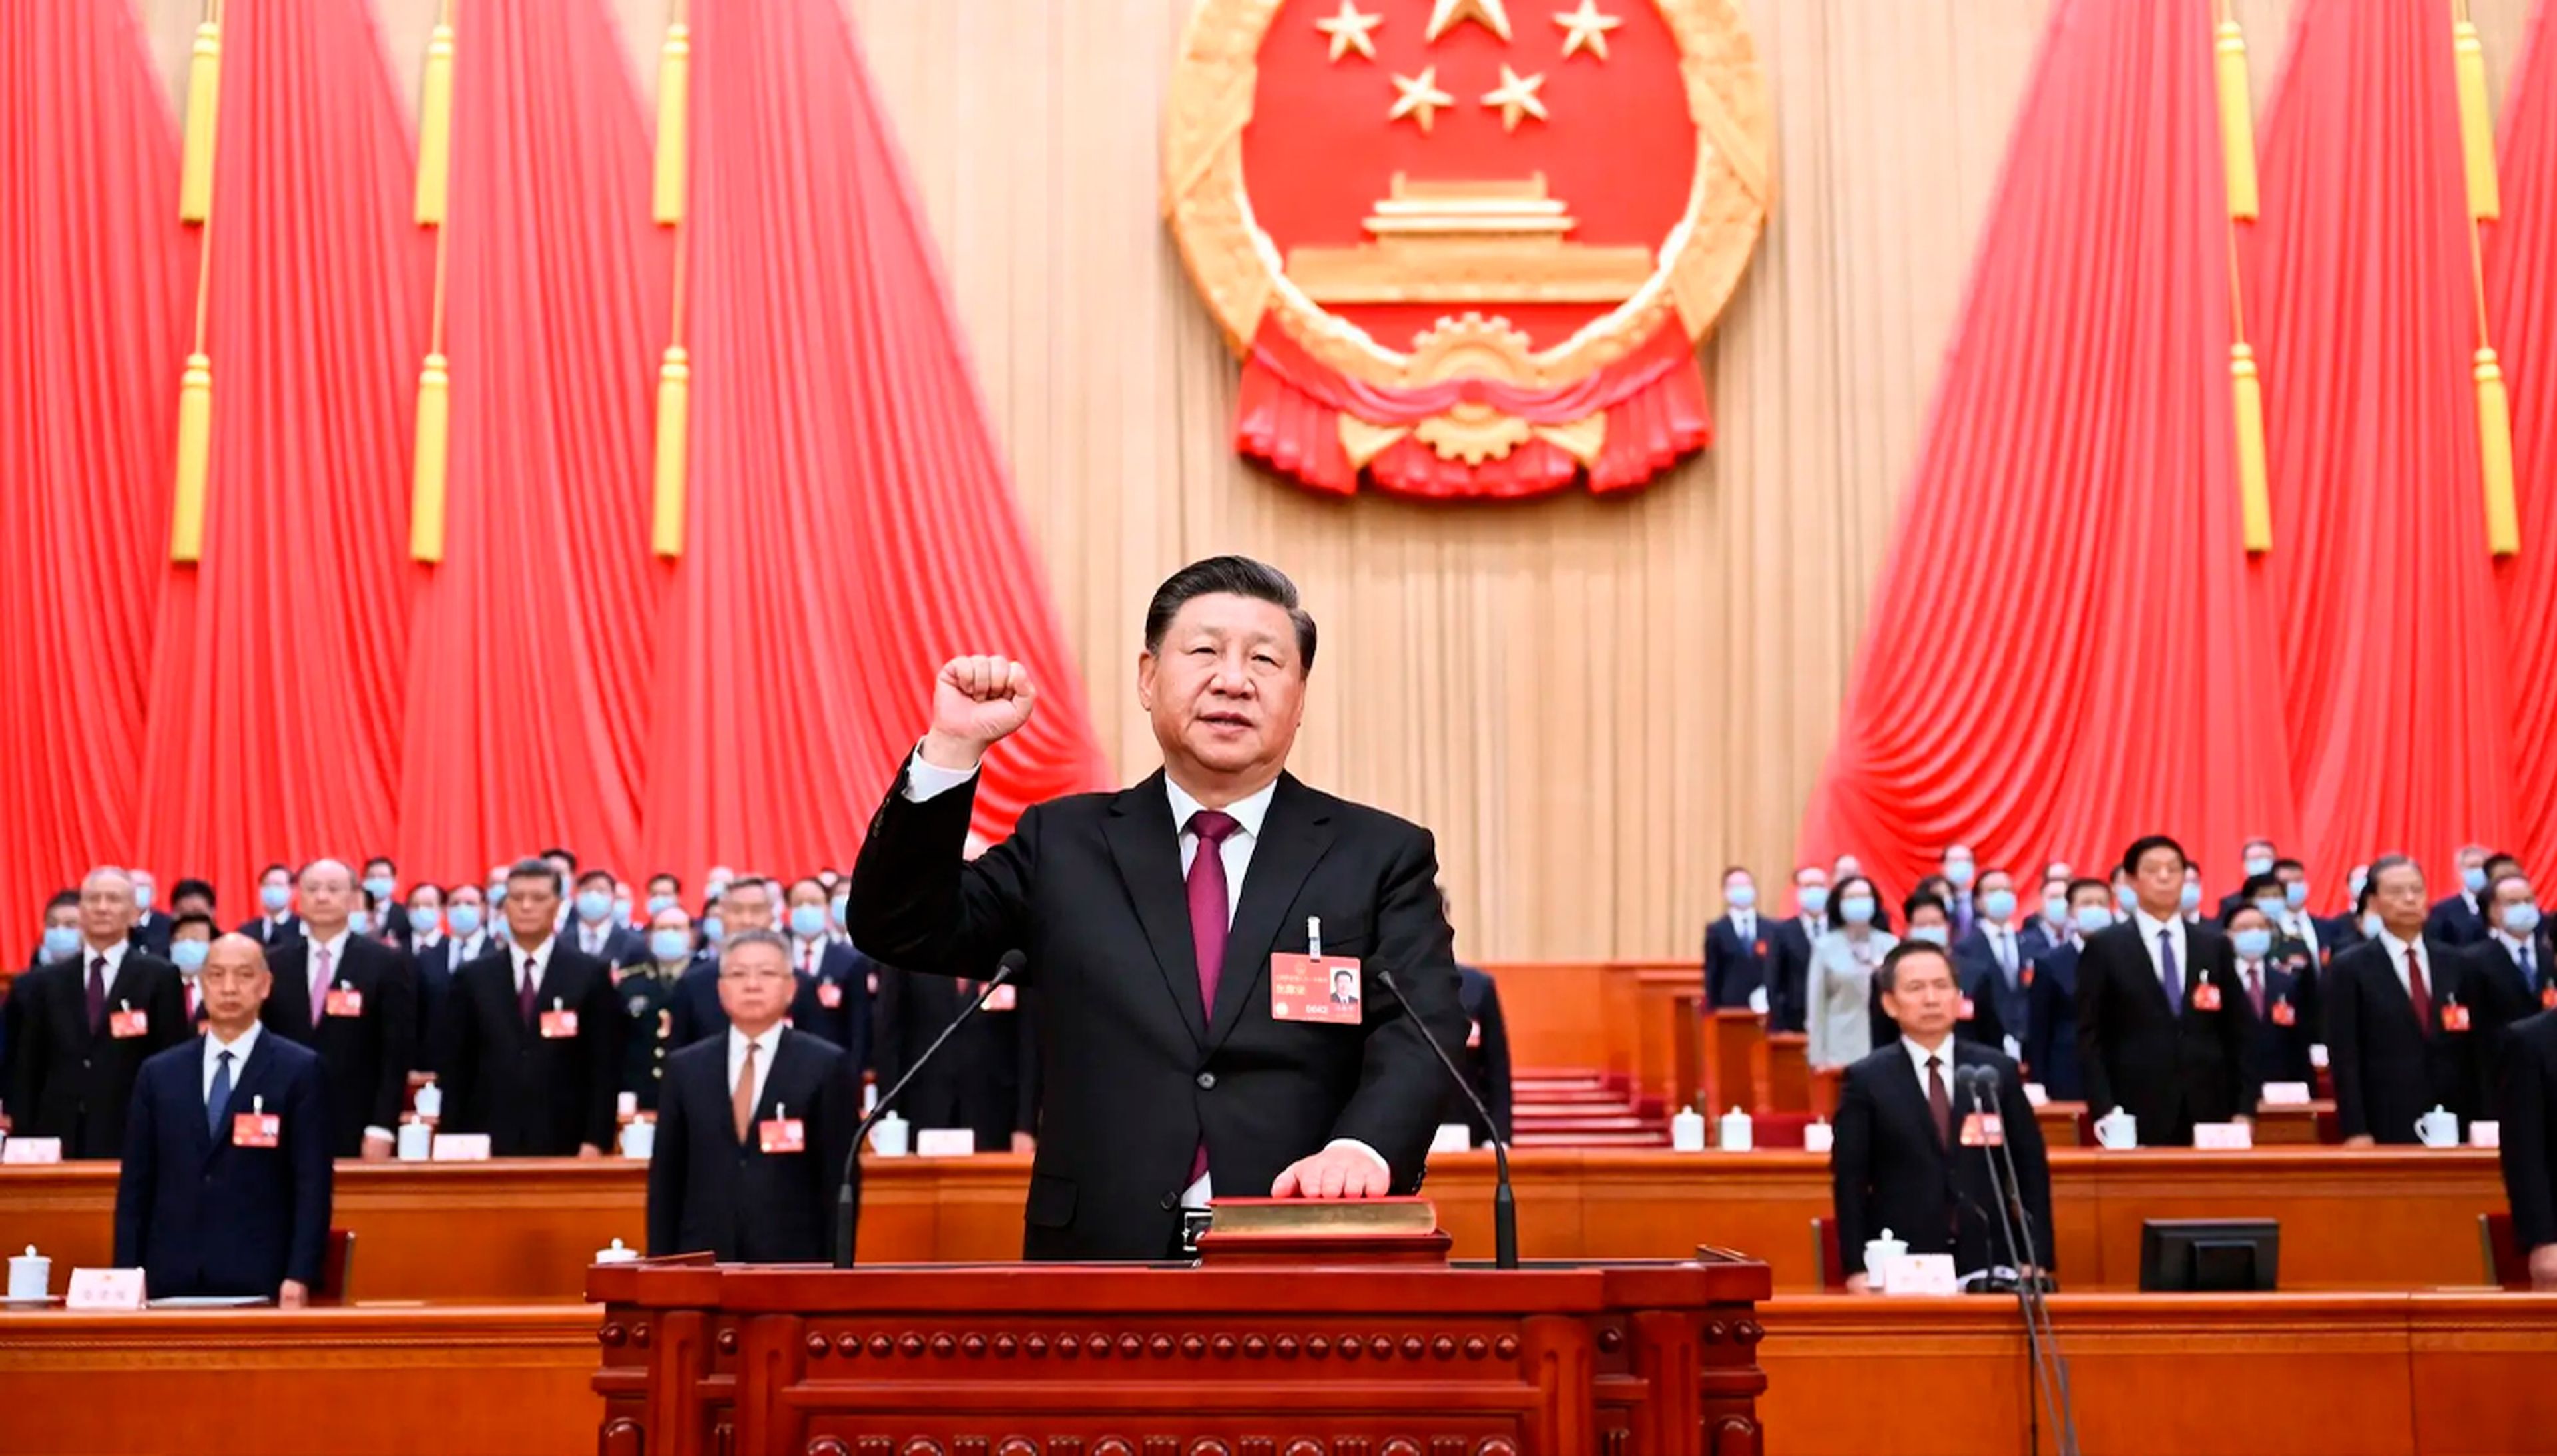 El gobierno de China ha lanzado un chatbot entrenado íntegramente en la filosofía política y económica de Xi Jinping. 